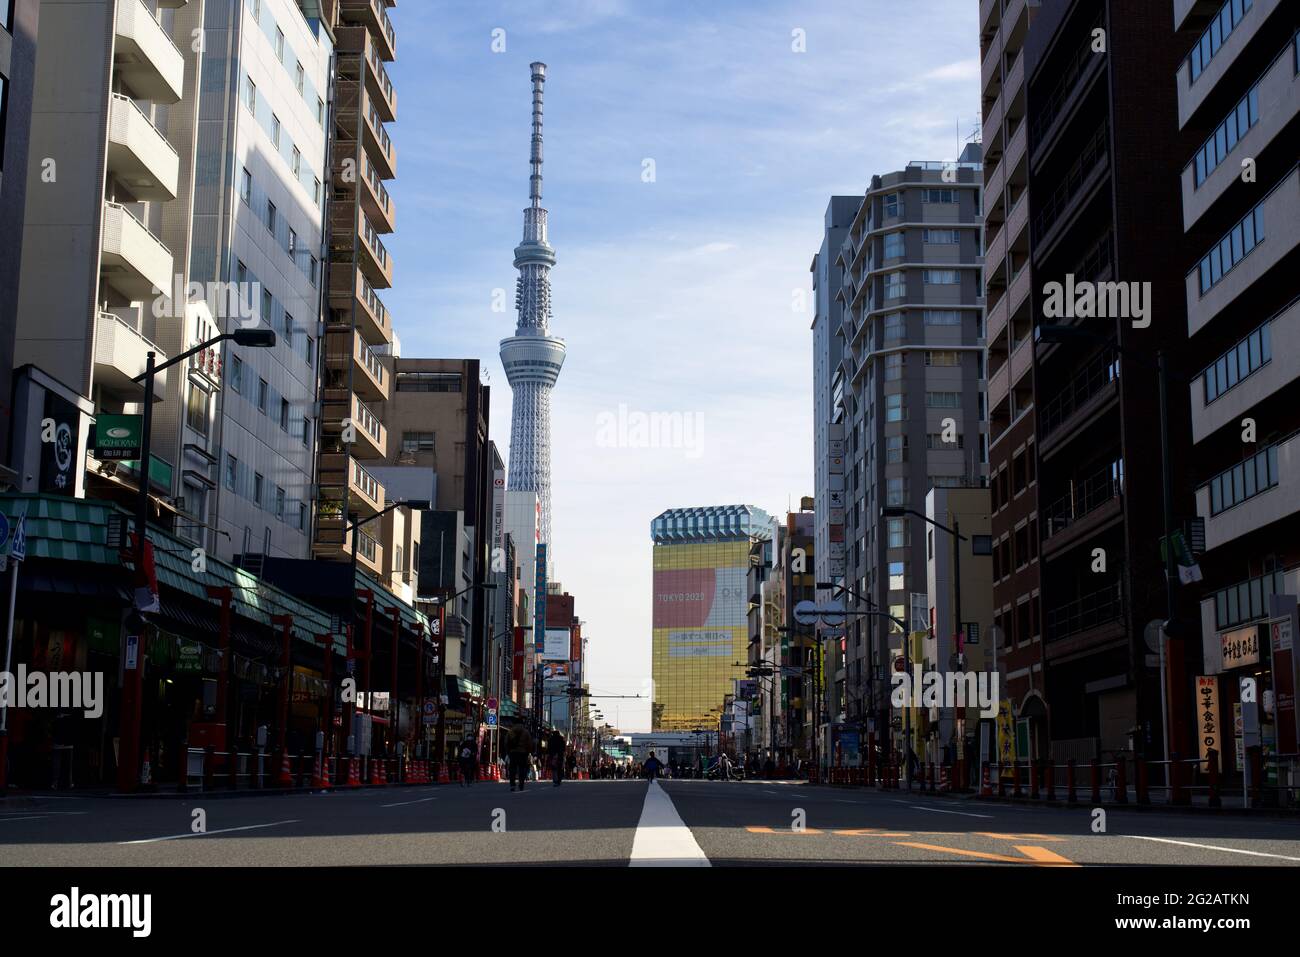 Vue du Tokyo Sky Tree et du siège social du Groupe Asahi depuis la rue Kaminarimon-Dori, pendant le nouvel an japonais, Asakusa, Tokyo, Japon Banque D'Images